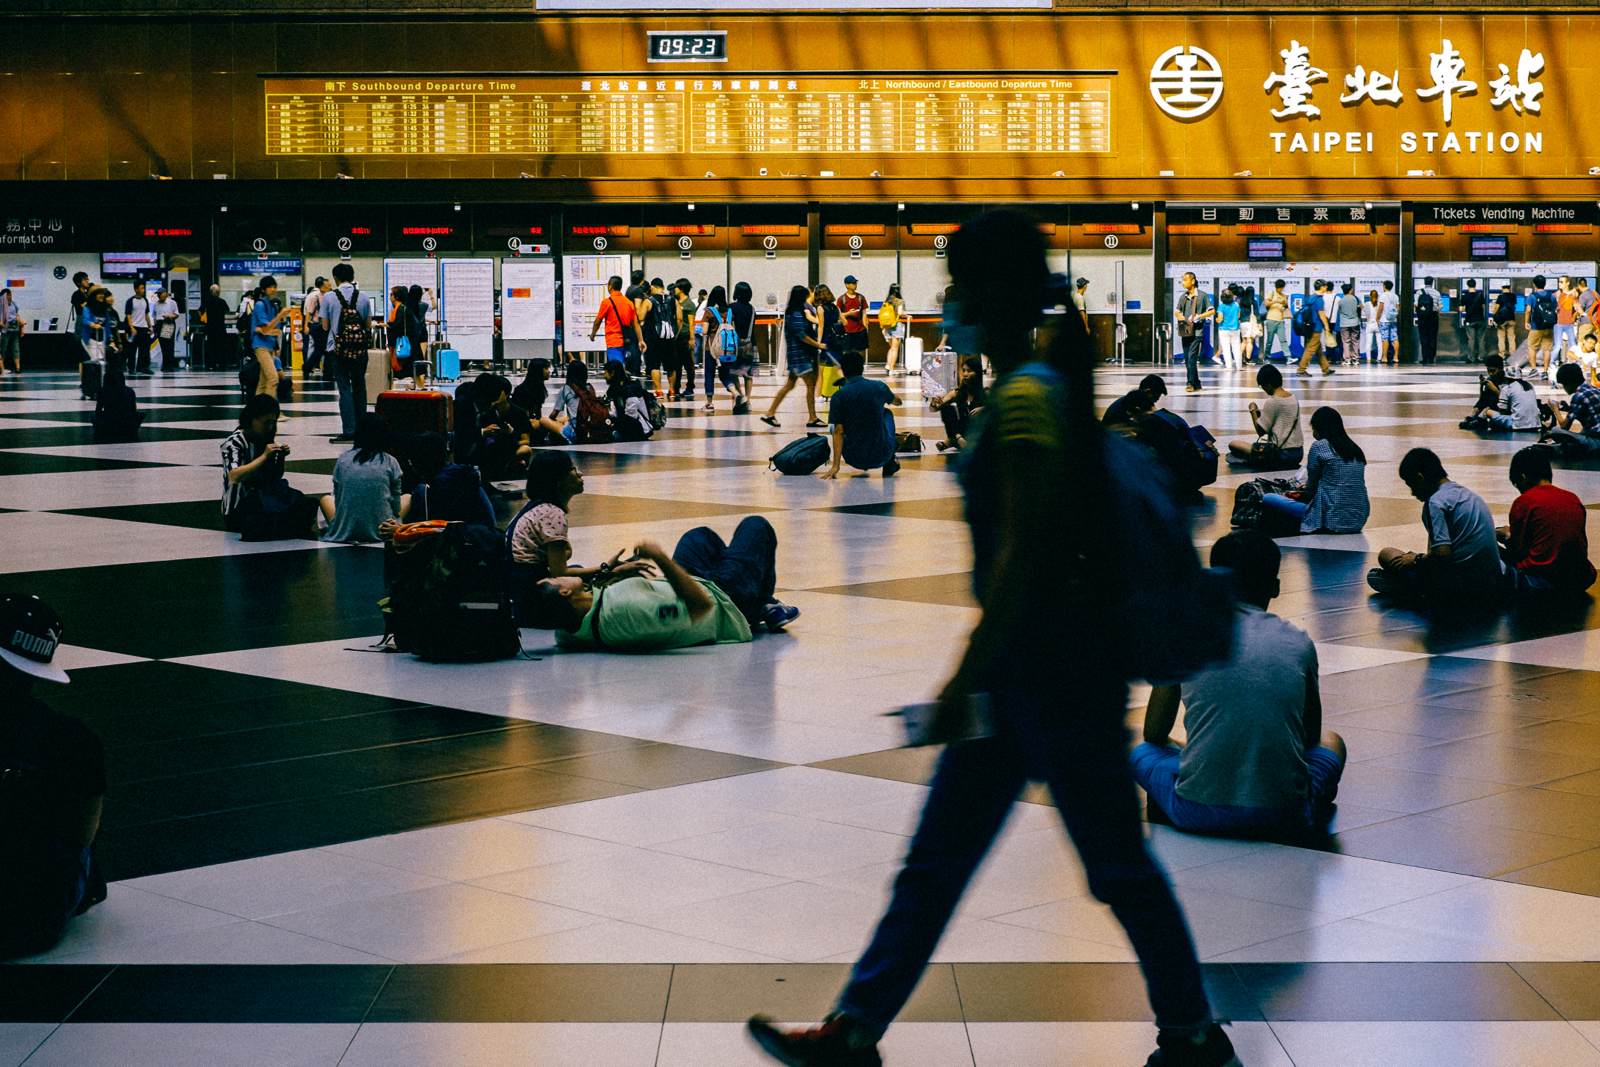 台北车站真的是名副其实的交通枢纽，捷运、台铁、高铁都在一起，完全可以做